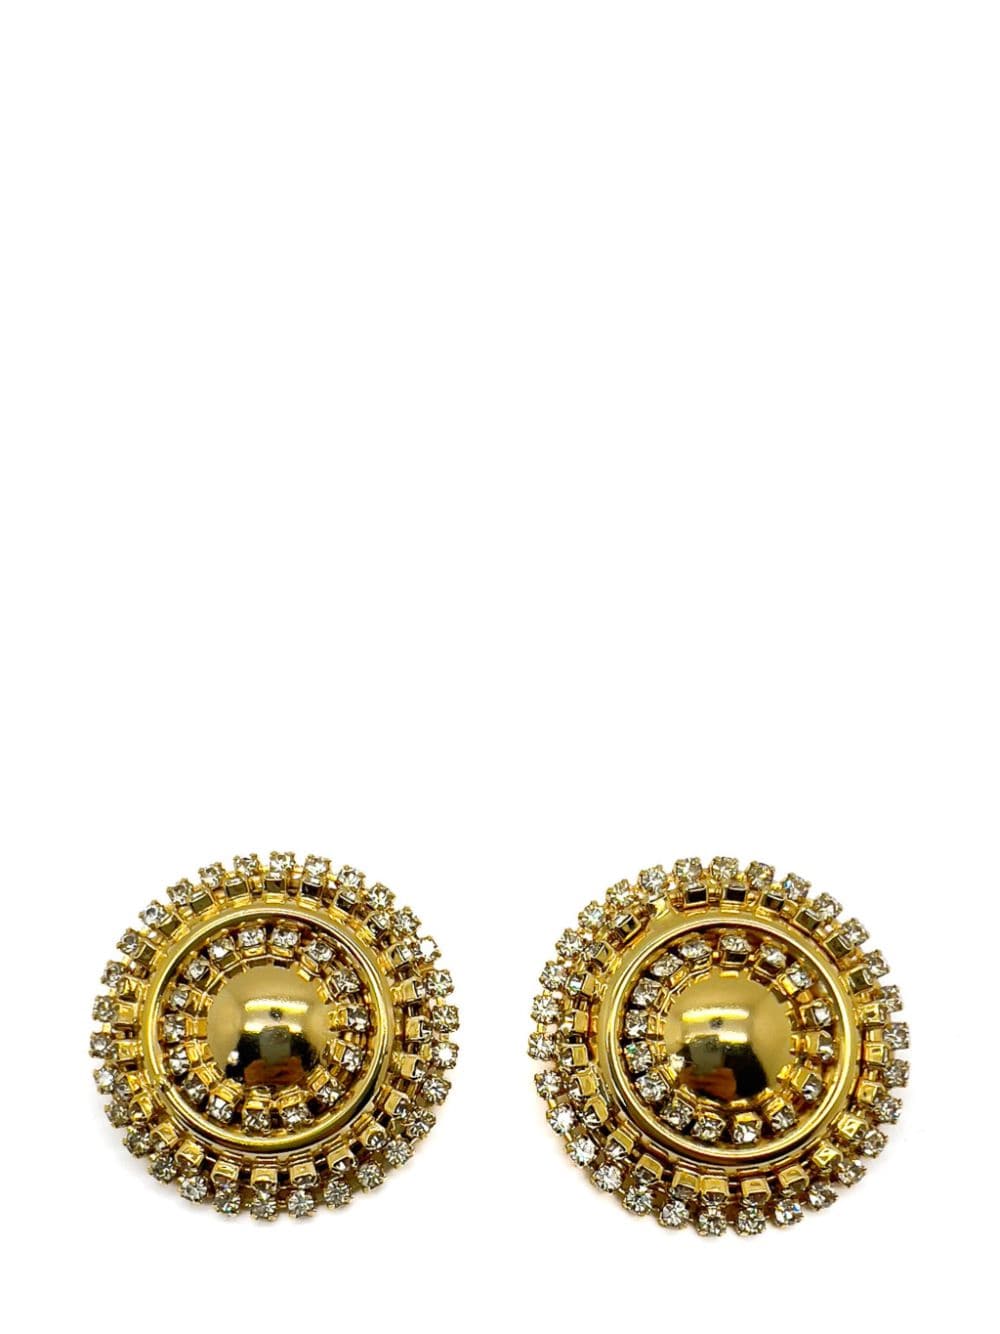 Jennifer Gibson Vintage Gold &amp; Crystal Statement Bullseye Earrings 1980s